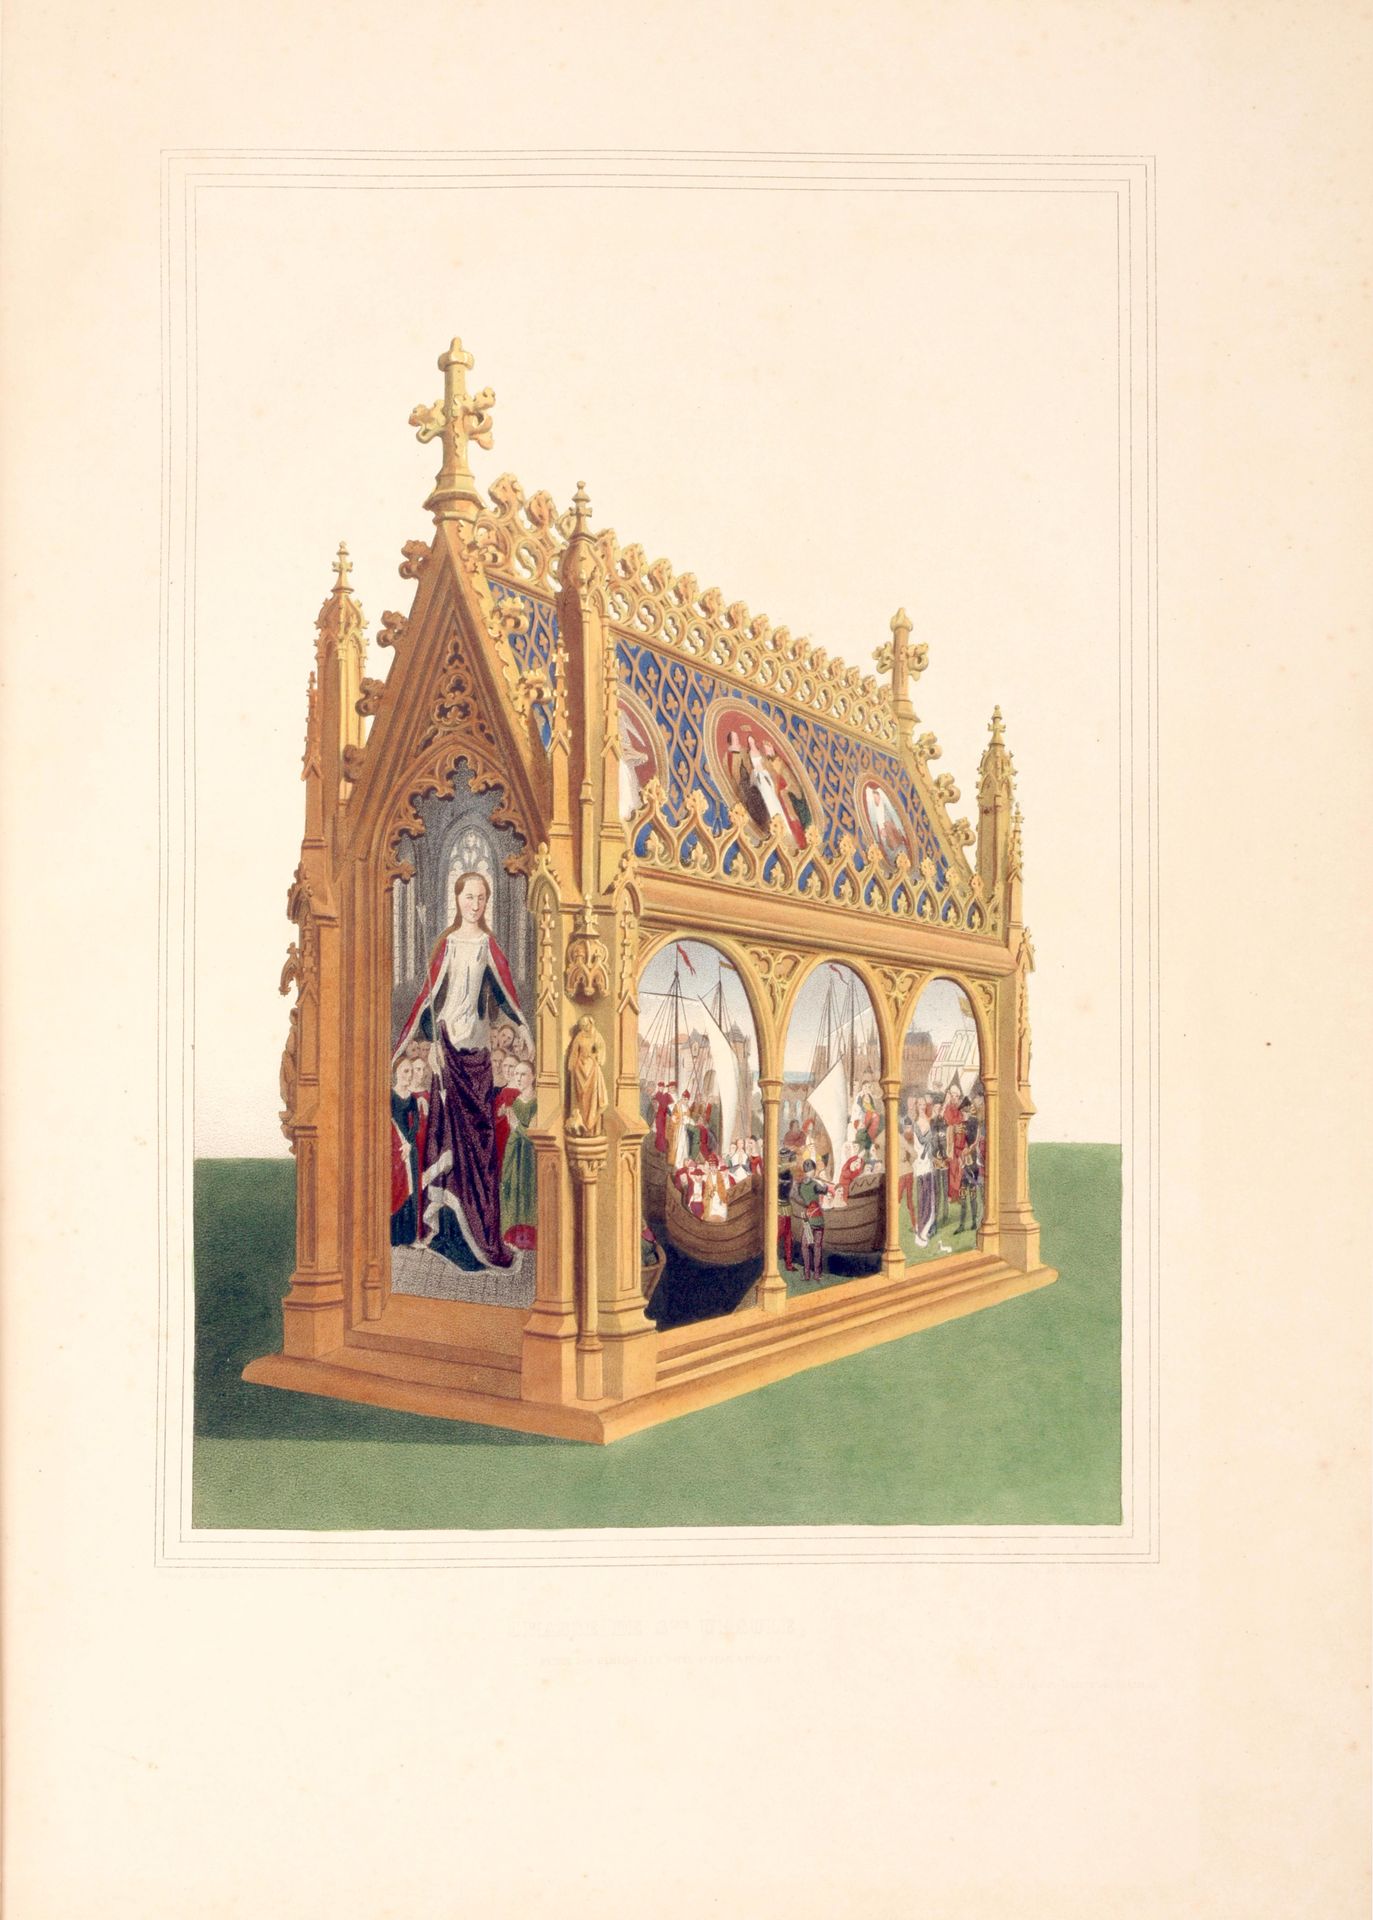 [MEMLING BRUGGE] Heiligtum der Heiligen Ursula von John Memling

Plano (59 x 42,&hellip;